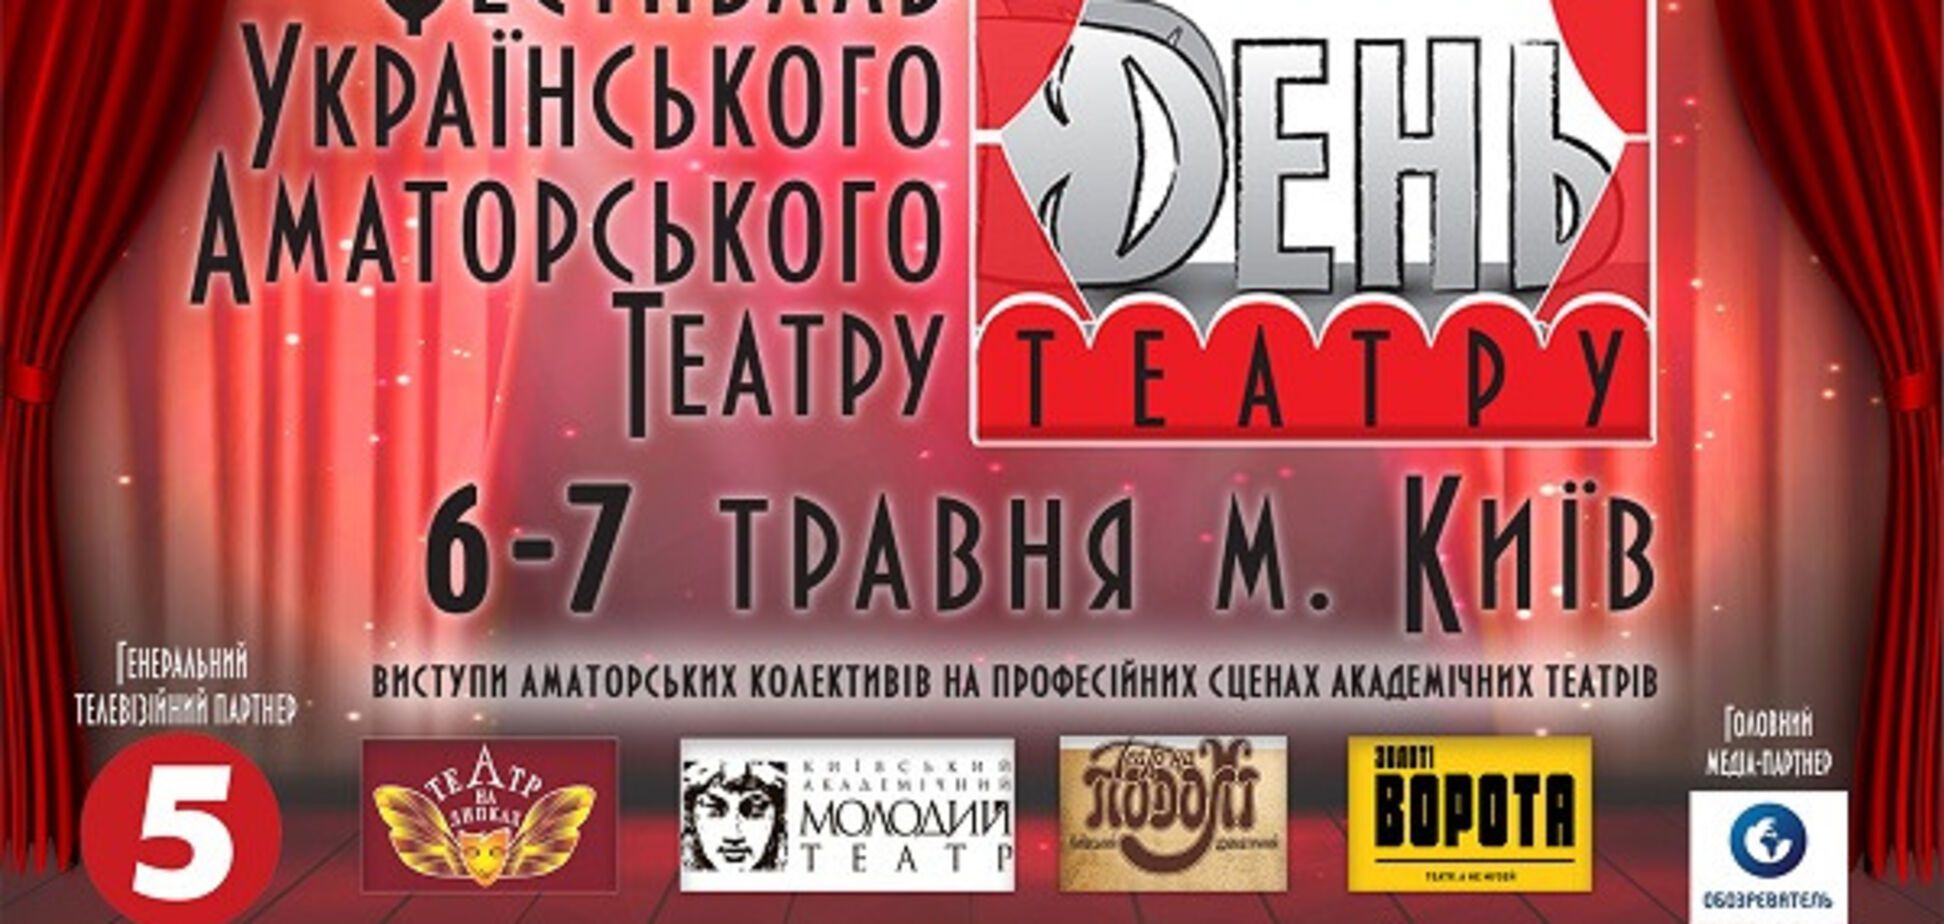 6-7 мая состоится Первый фестиваль украинского аматорского театра 'День театра'